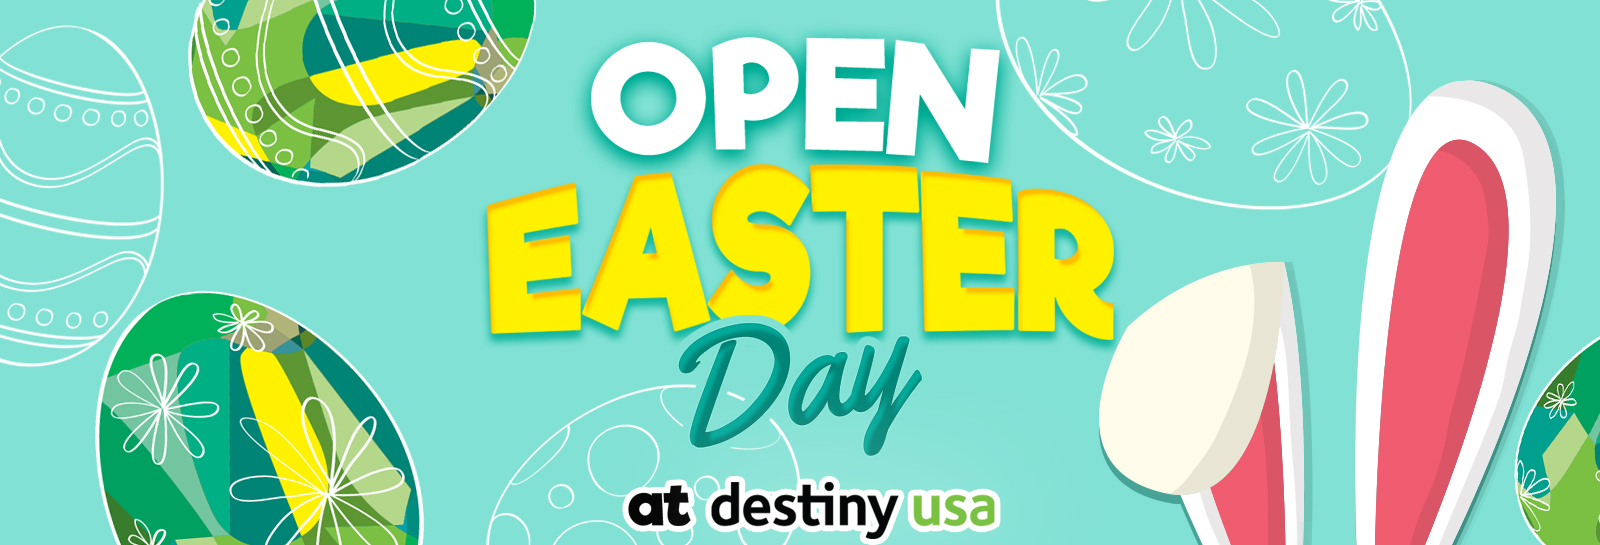 Open on Easter Sunday at Destiny USA - Destiny USA